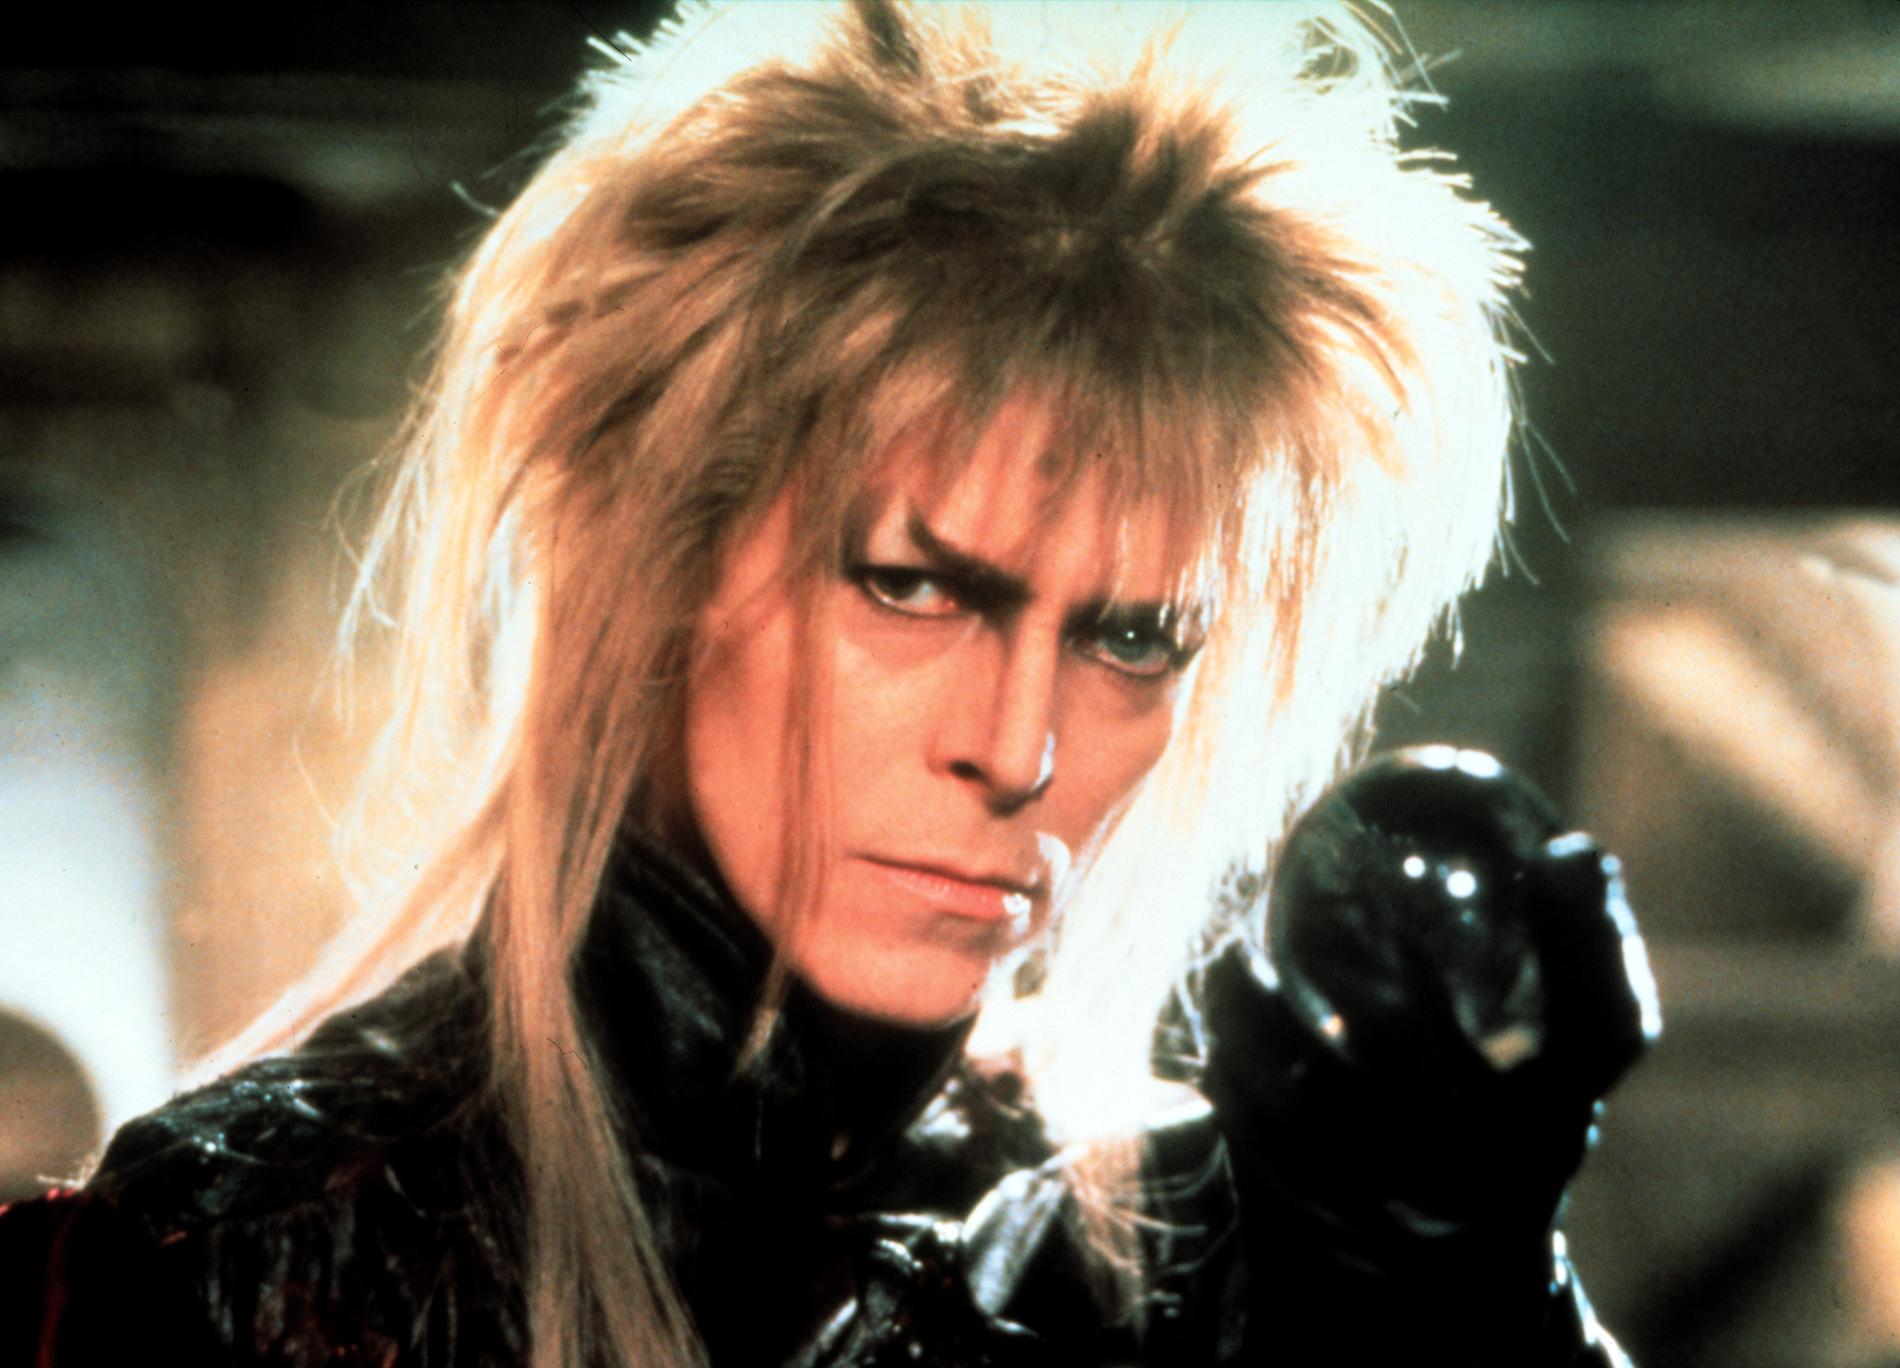 I Mupparnaskaparen Jim Bensons fantasyäventyrsfilm från 1986 spelar Bowie Jareth – en trollkung med en helt overklig frisyr.